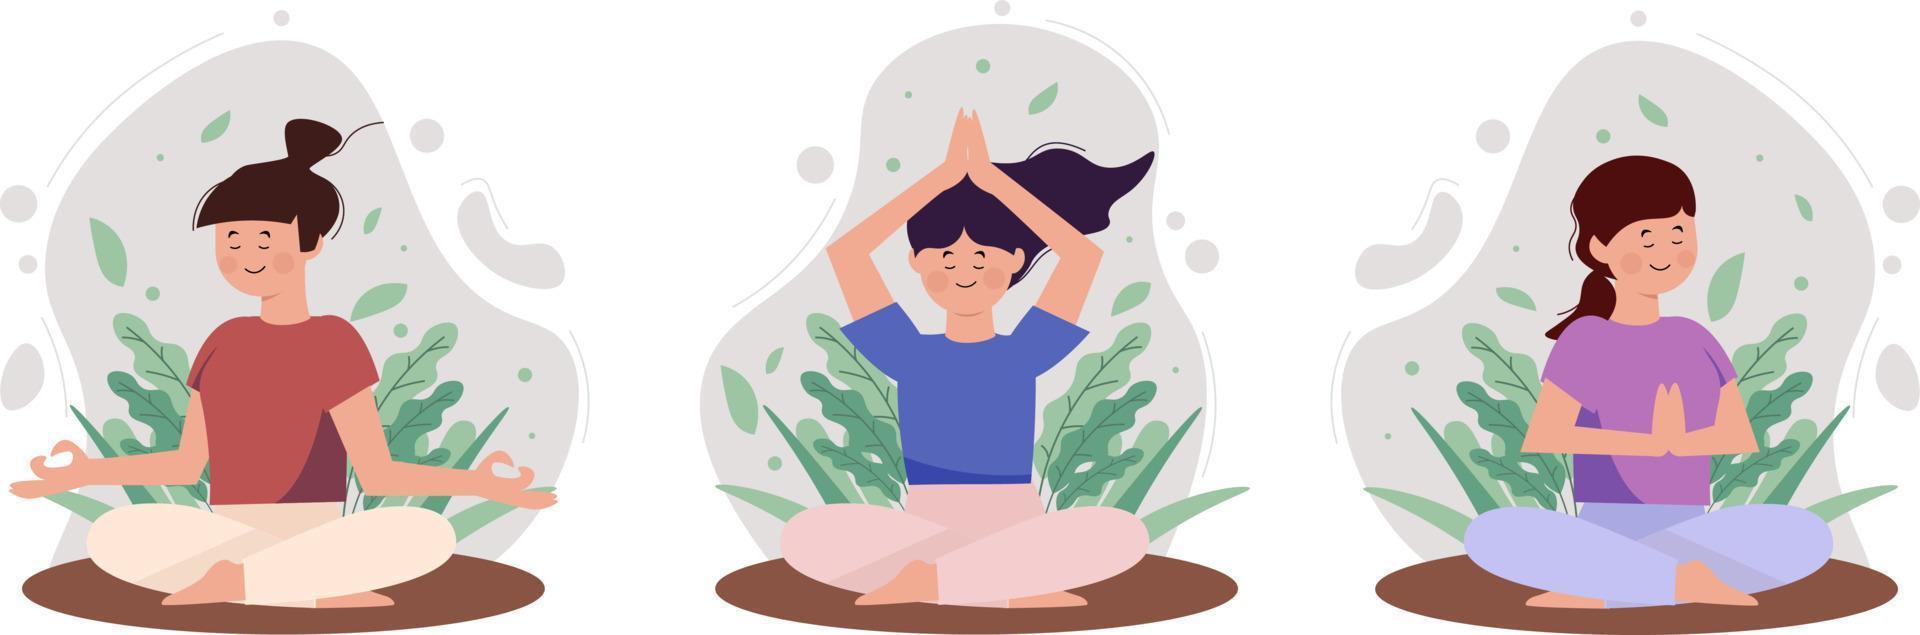 Eine Reihe ruhiger Frauen mit geschlossenen Augen und gekreuzten Beinen, die in Yoga-Haltung meditieren. Meditationspraxis isoliert auf weißem Hintergrund. gut für Designillustrationen und Social-Media-Inhalte. vektor